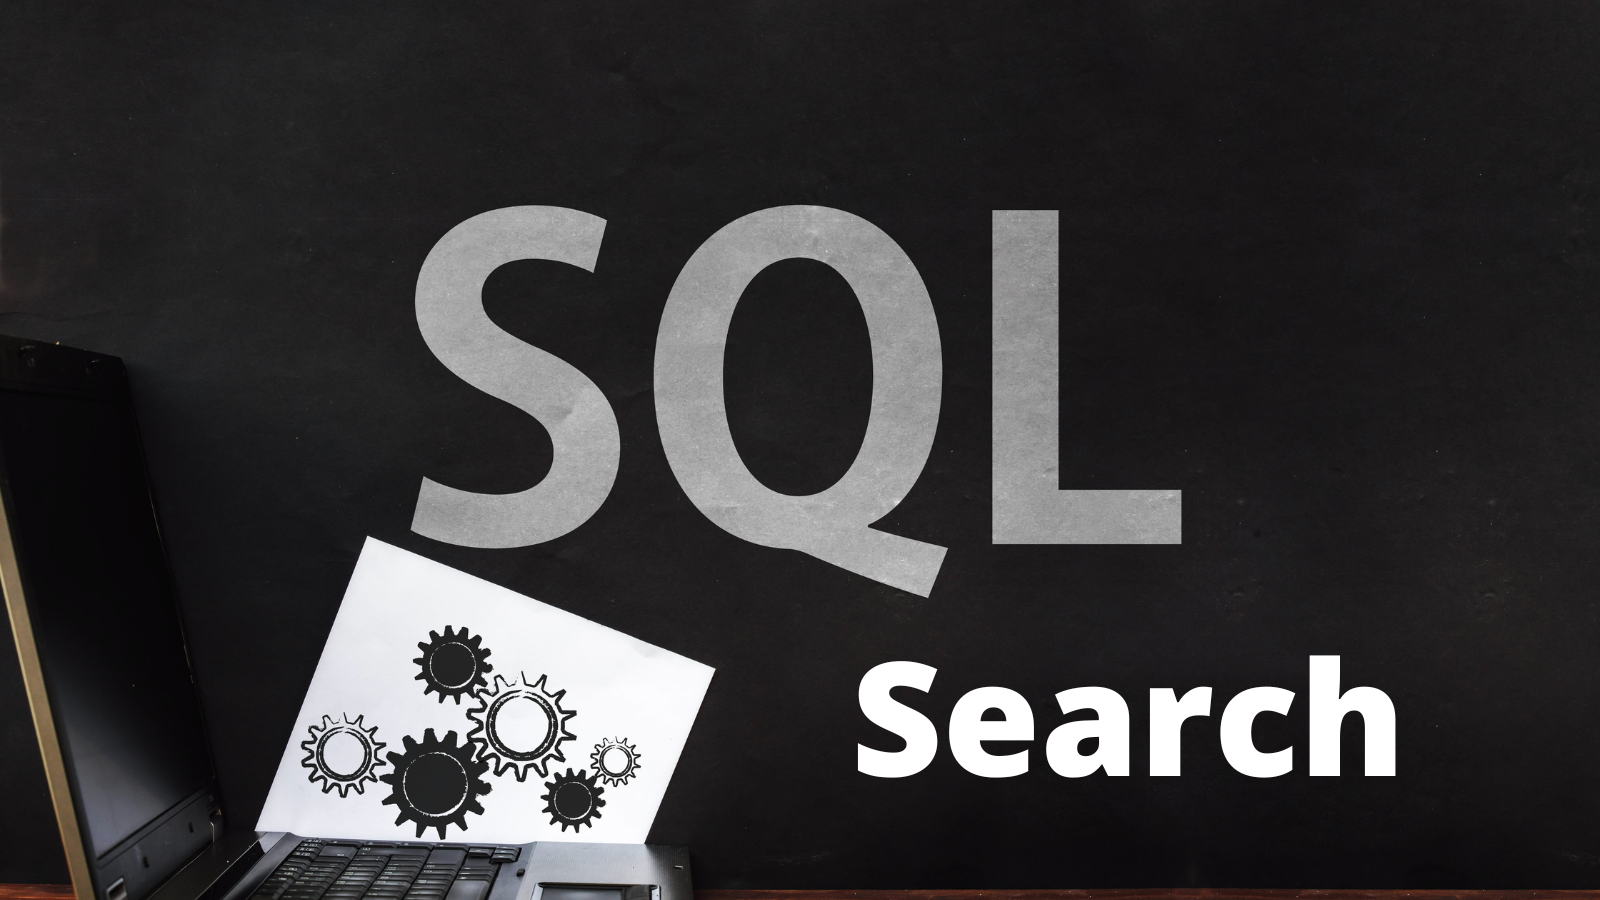 SQL Search